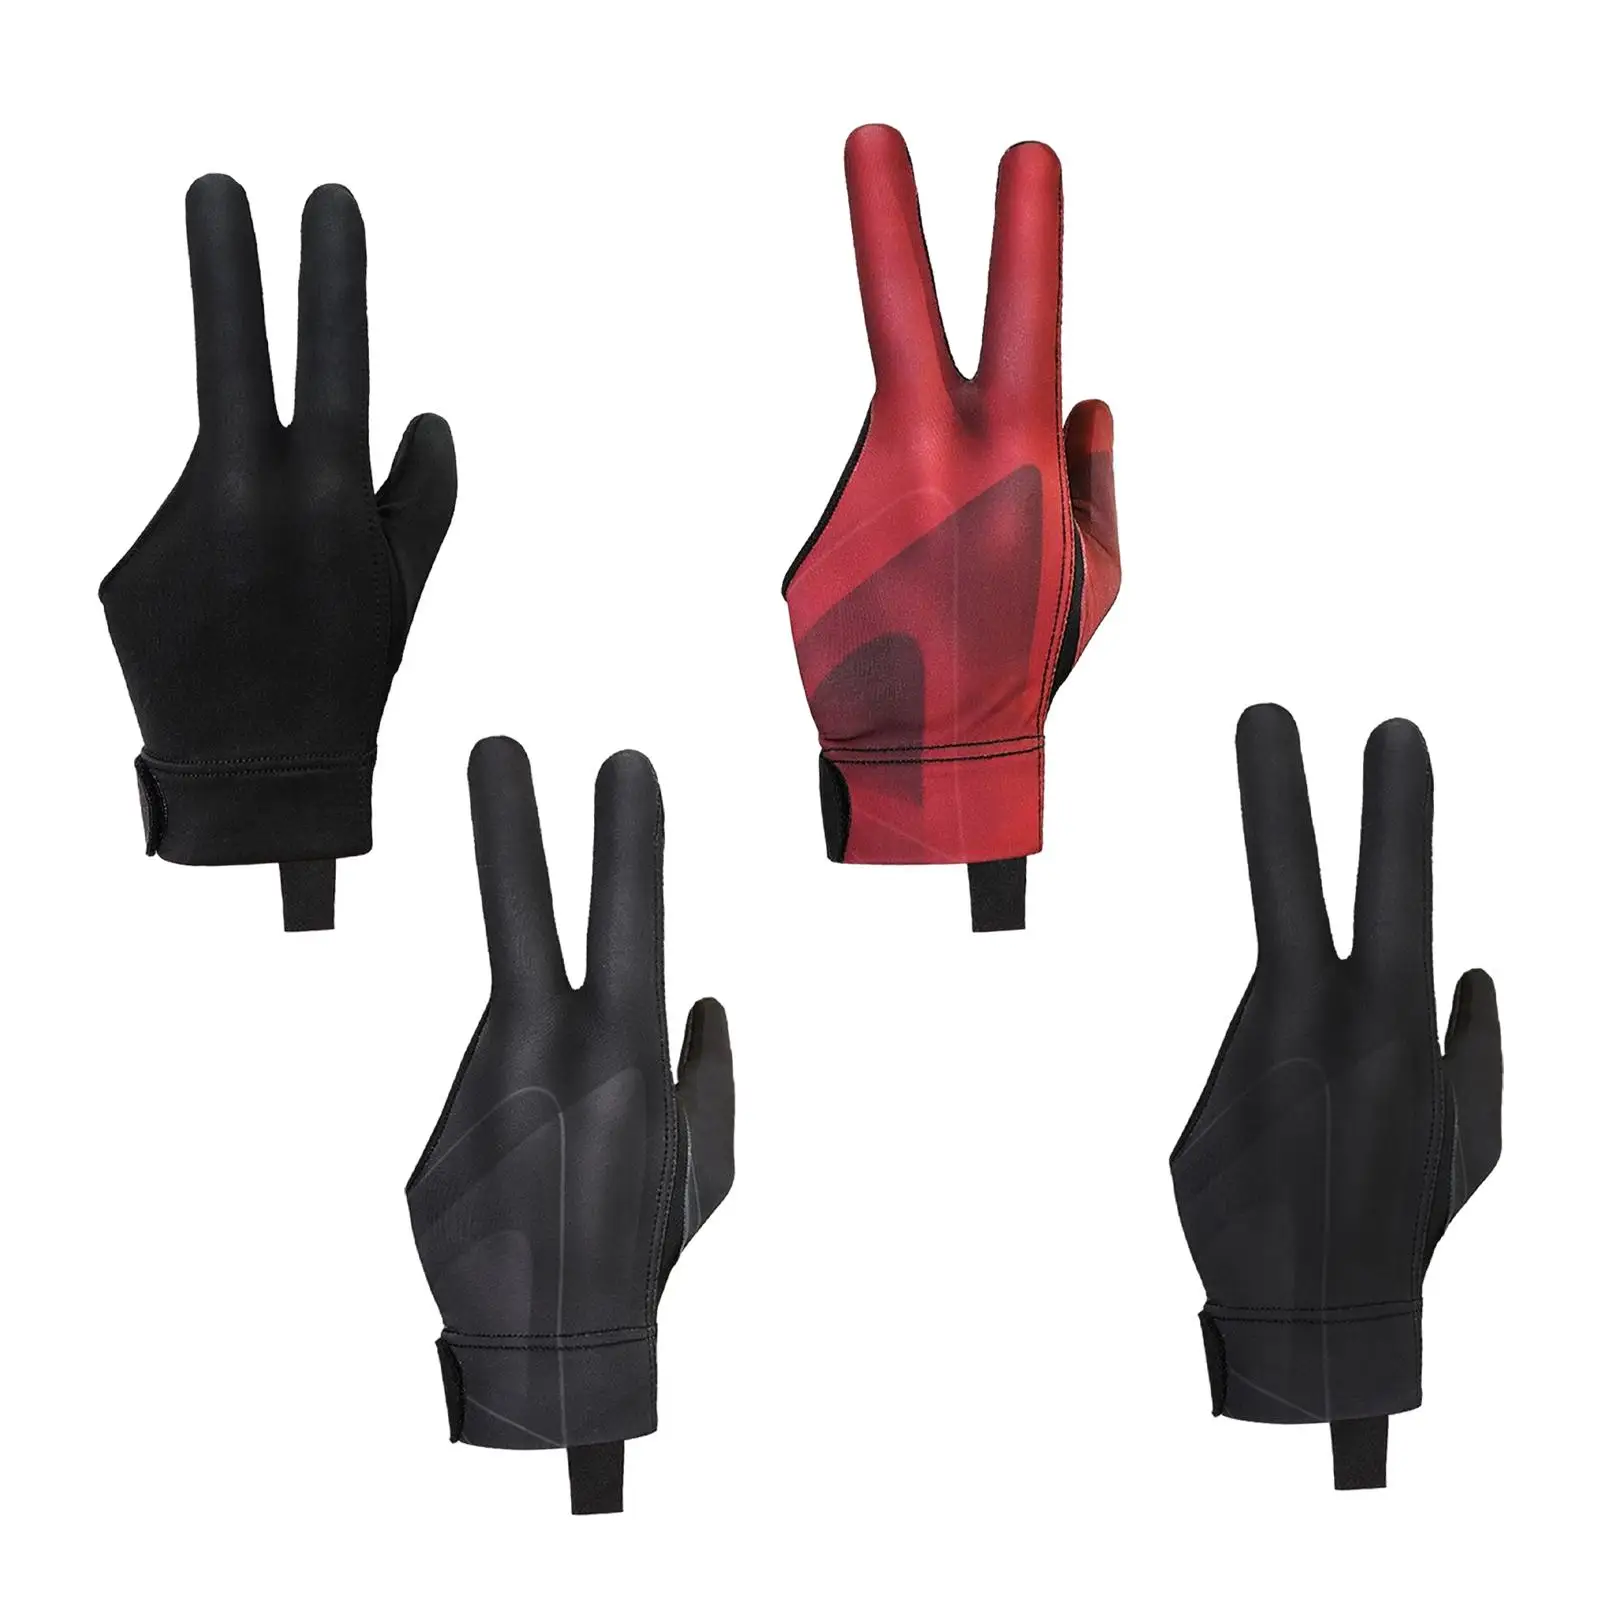 Three Fingers Billiard Glove Snooker Glove Modern Durable Billiard Accessories Separate Finger Gloves for Women Men Left Hand